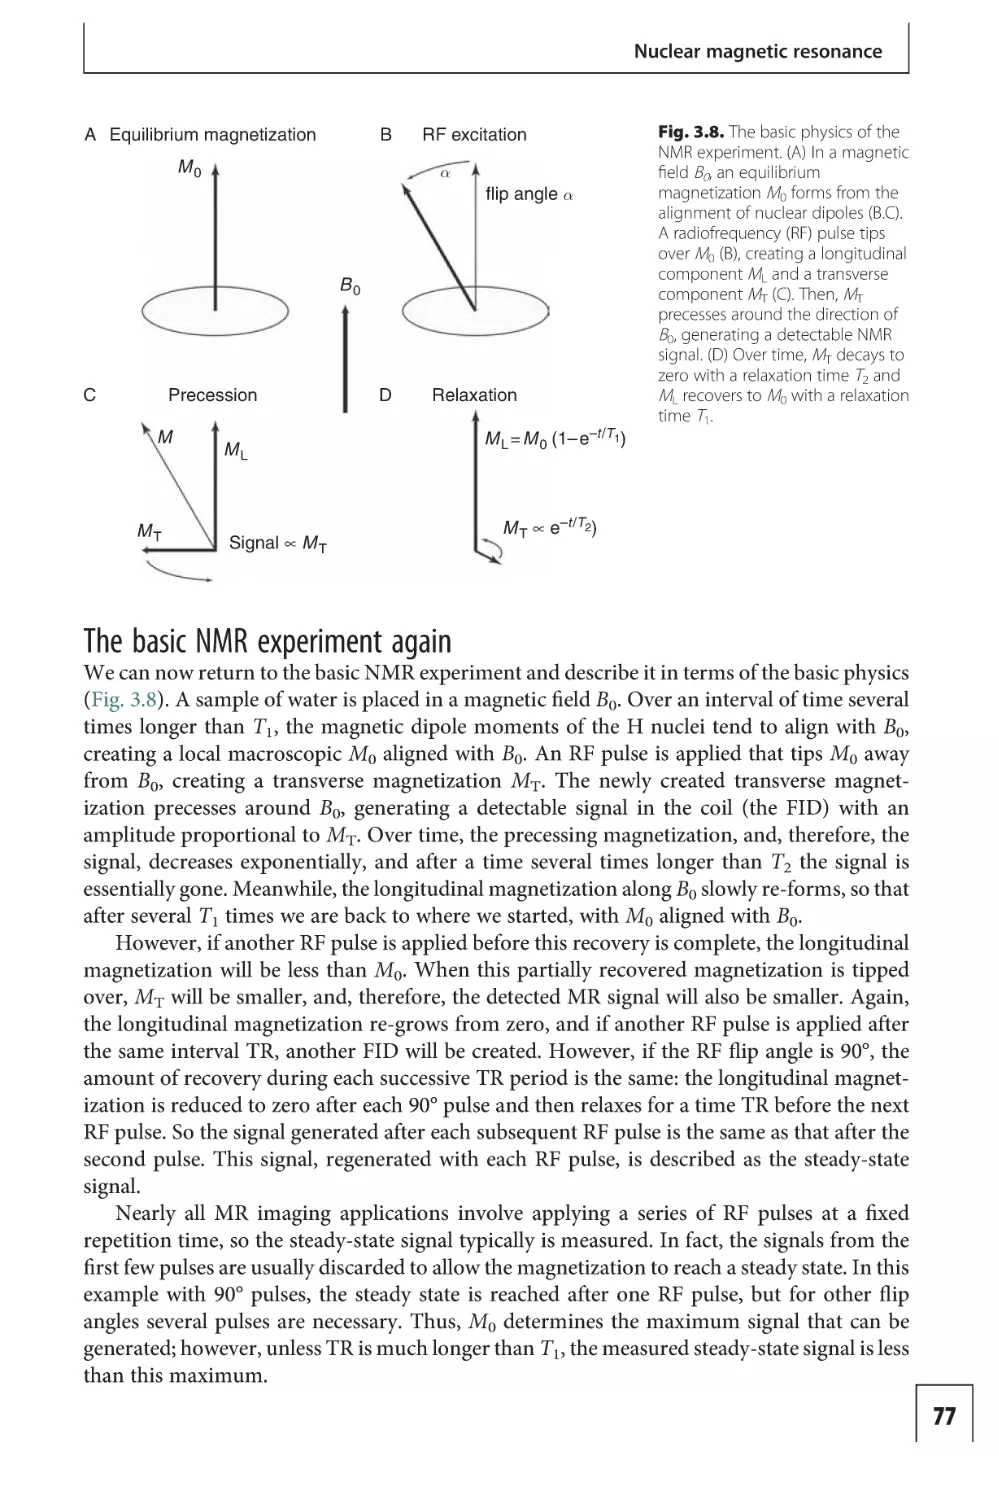 The basic NMR experiment again